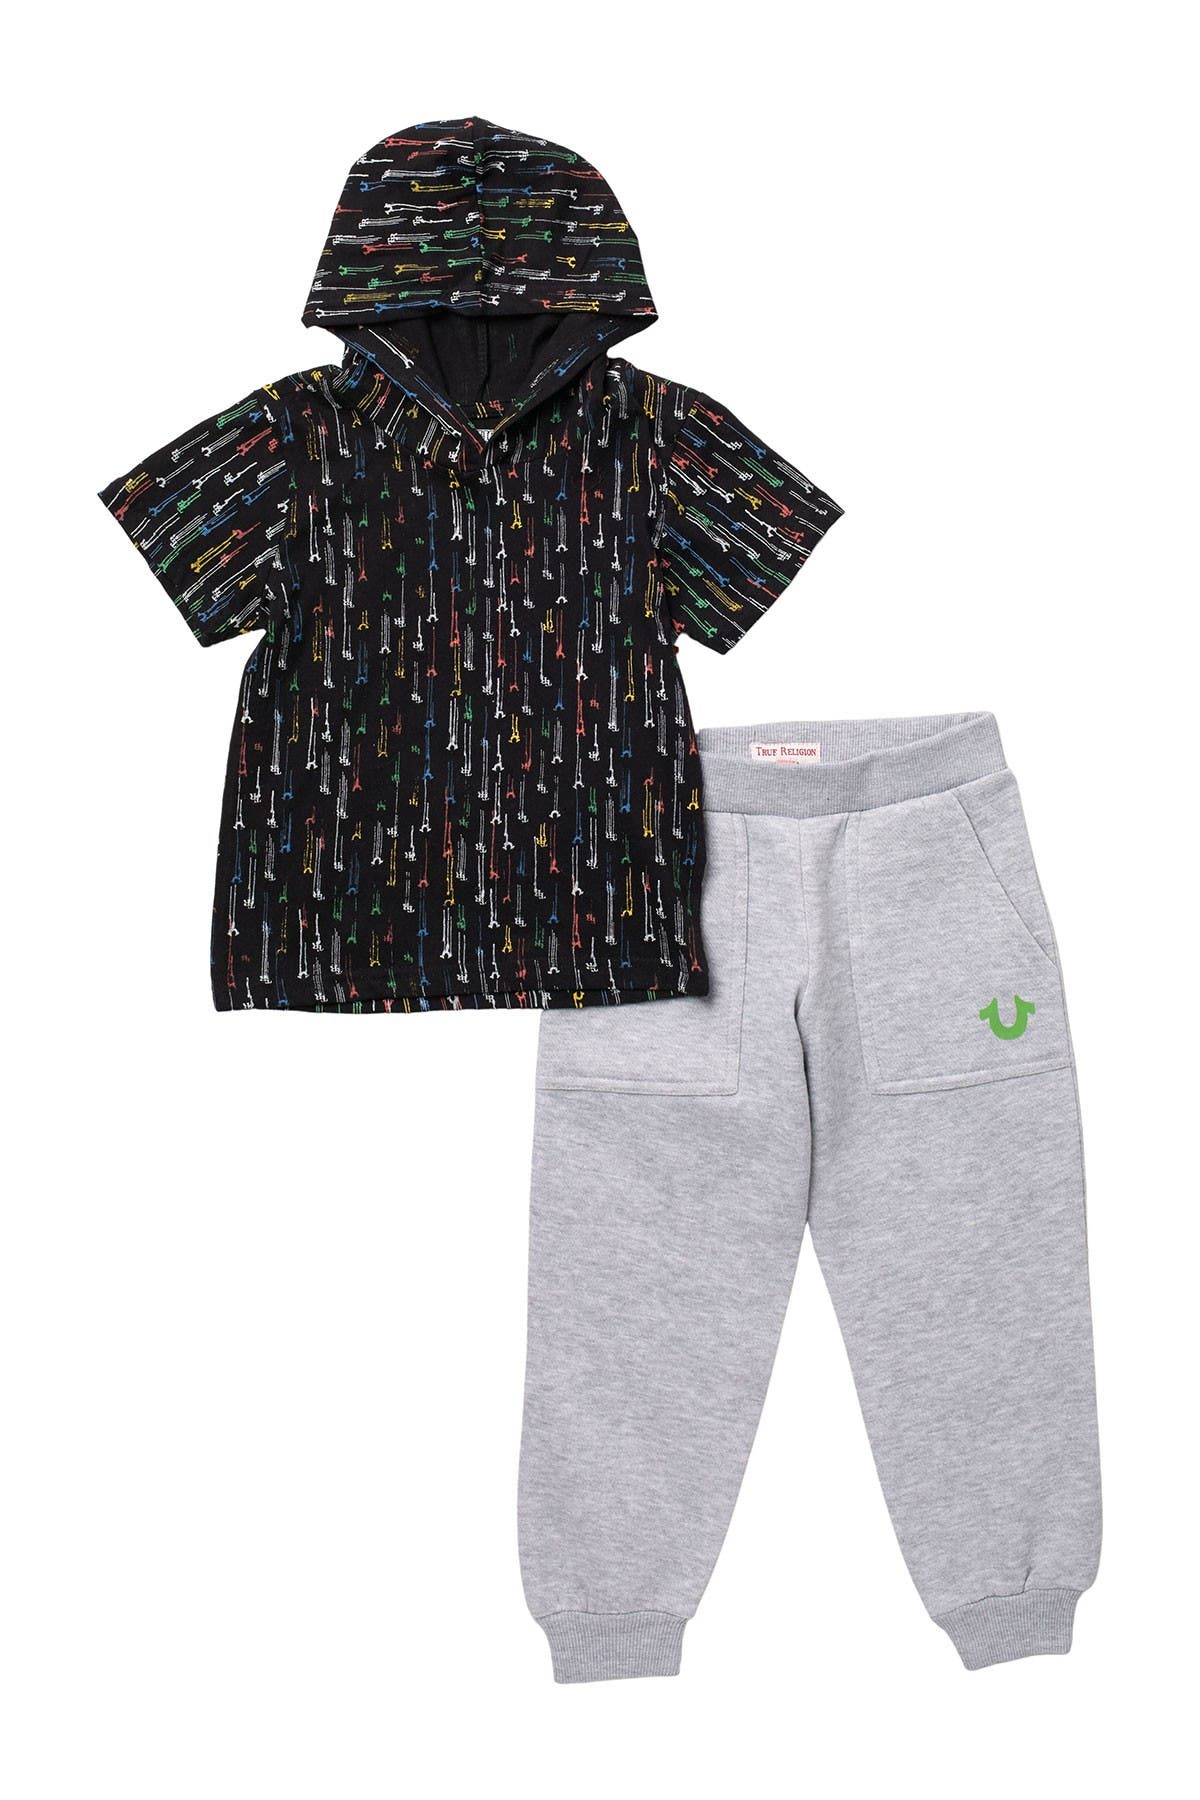 toddler true religion jogging suit